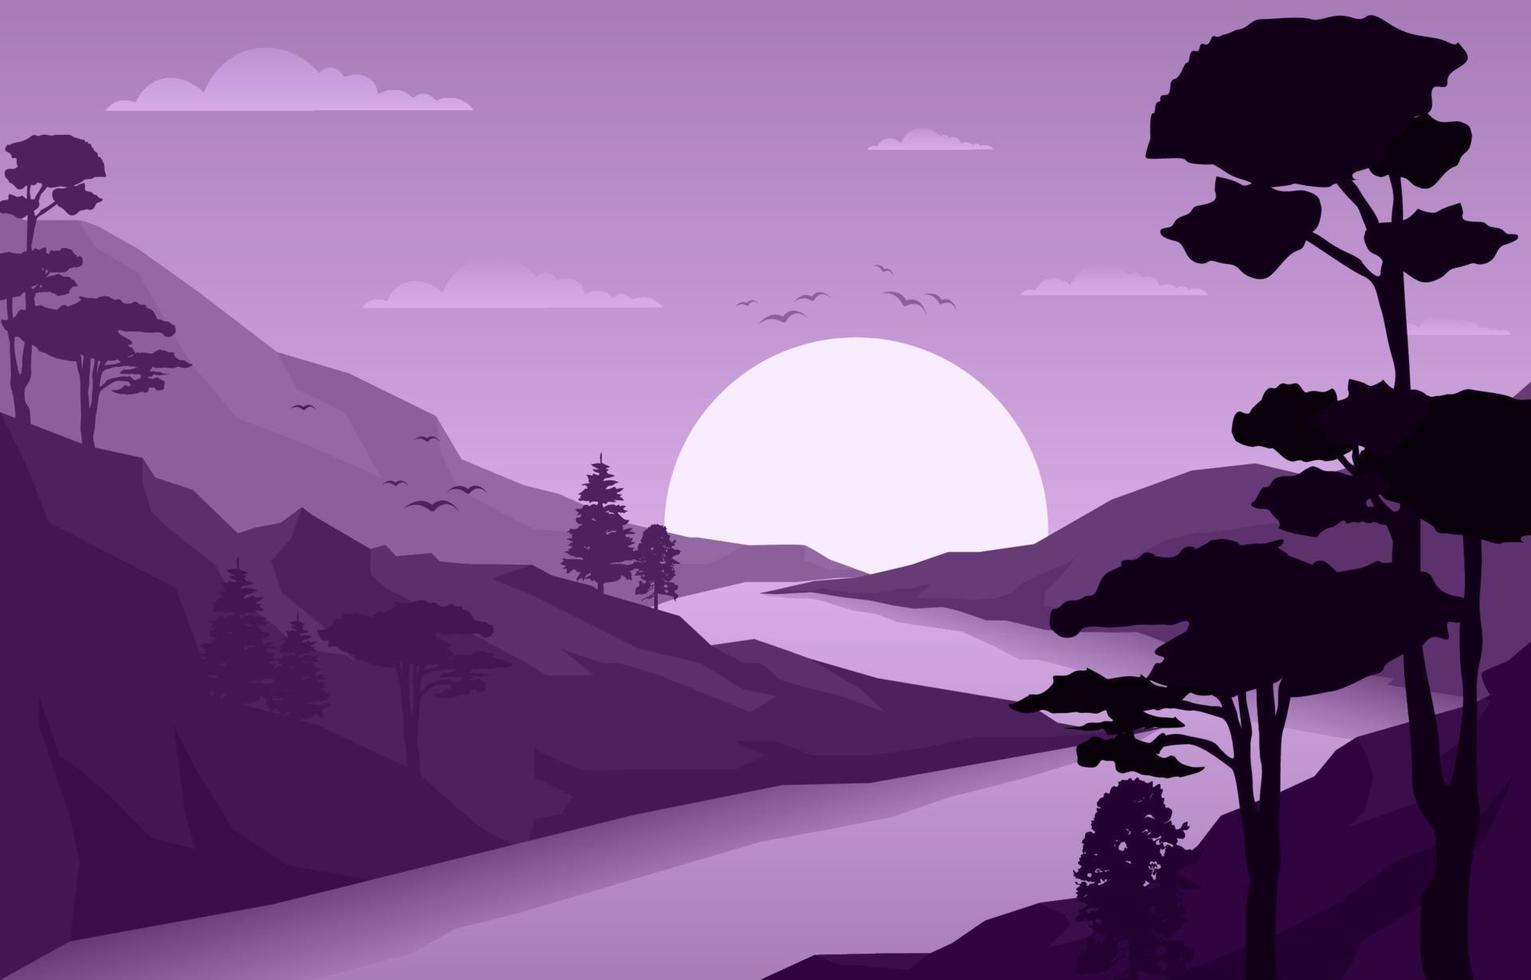 soluppgång över bergskog landskap illustration vektor